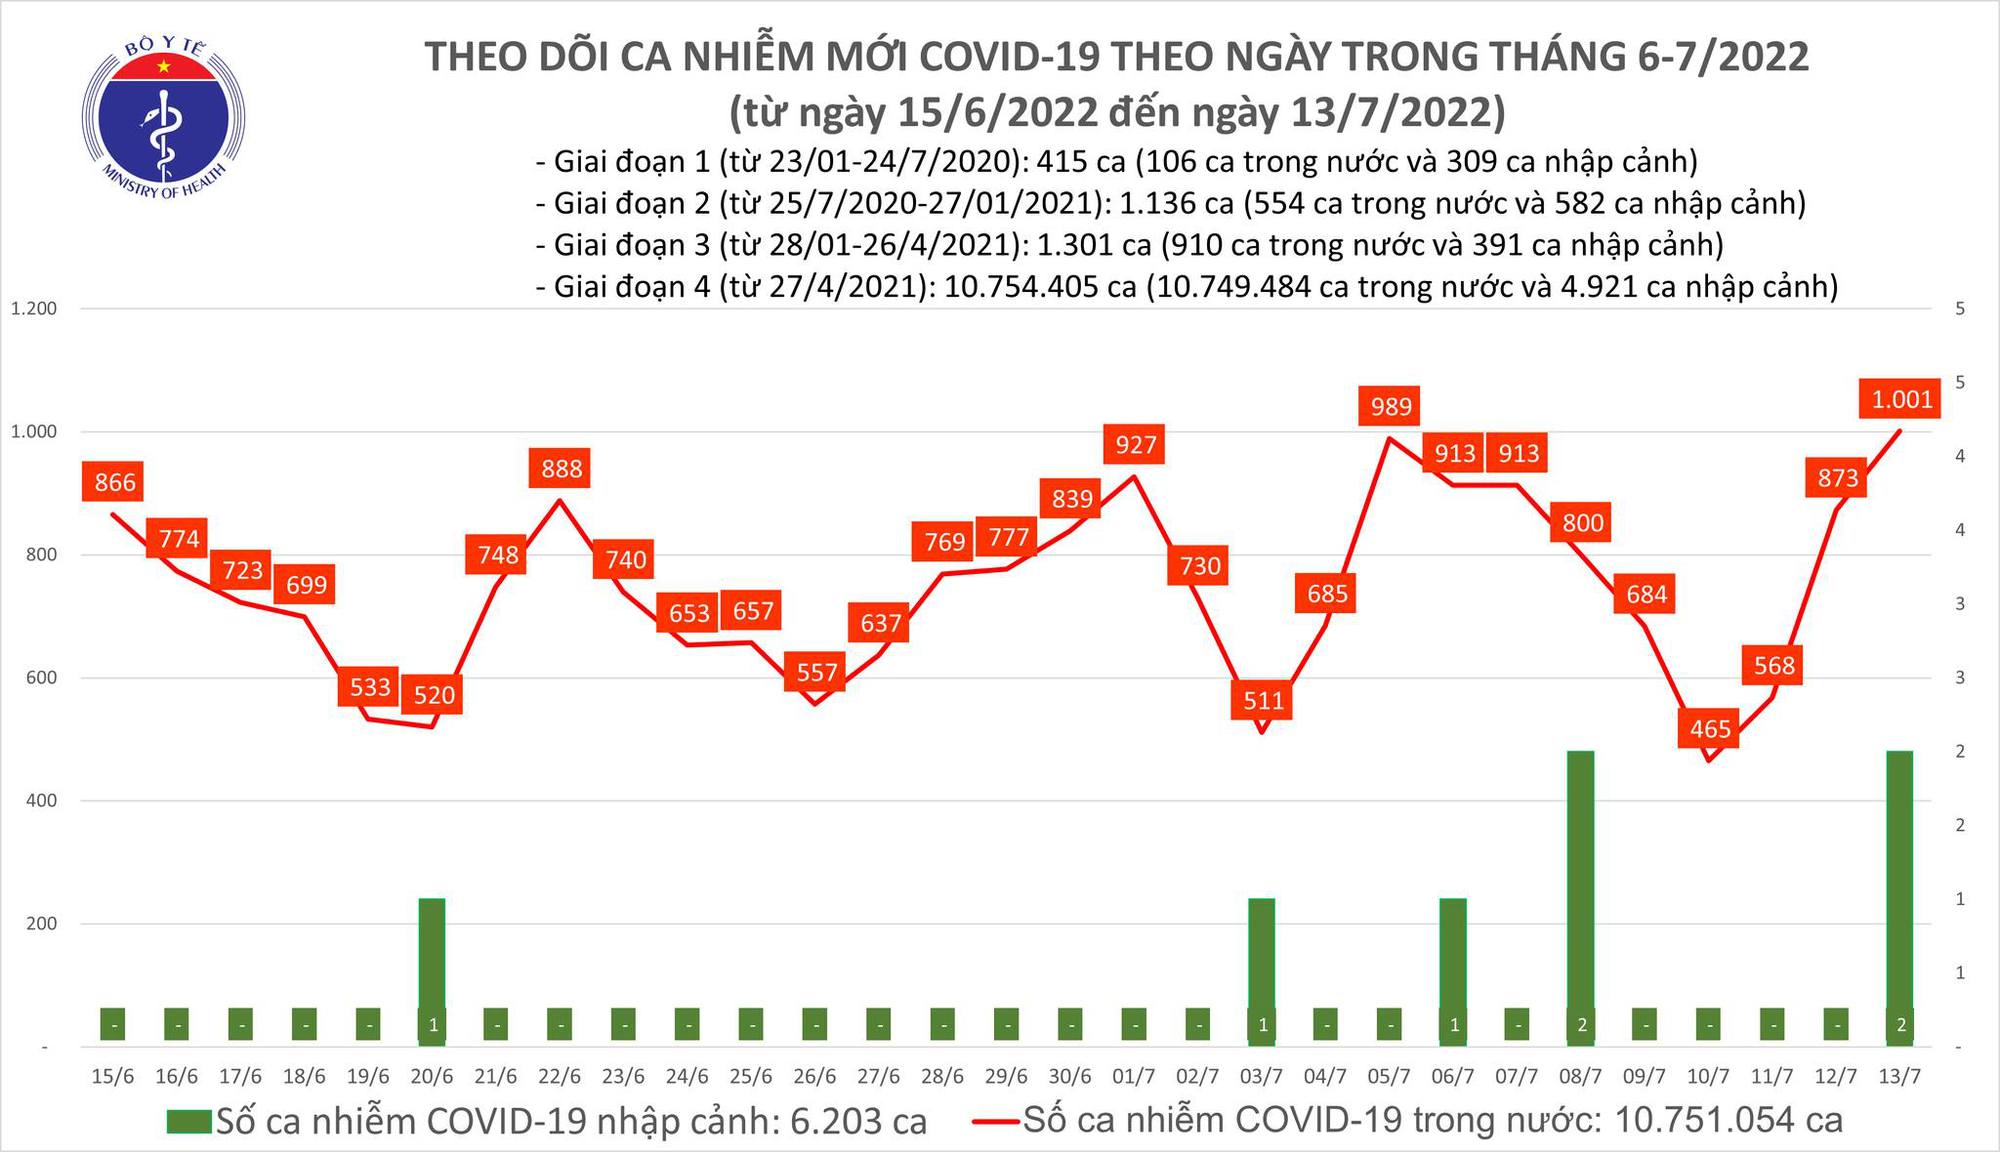 Dịch Covid-19 hôm nay: Số mắc lần đầu tăng lên trên 1.000 ca sau hơn 1 tháng giảm sâu - Ảnh 1.